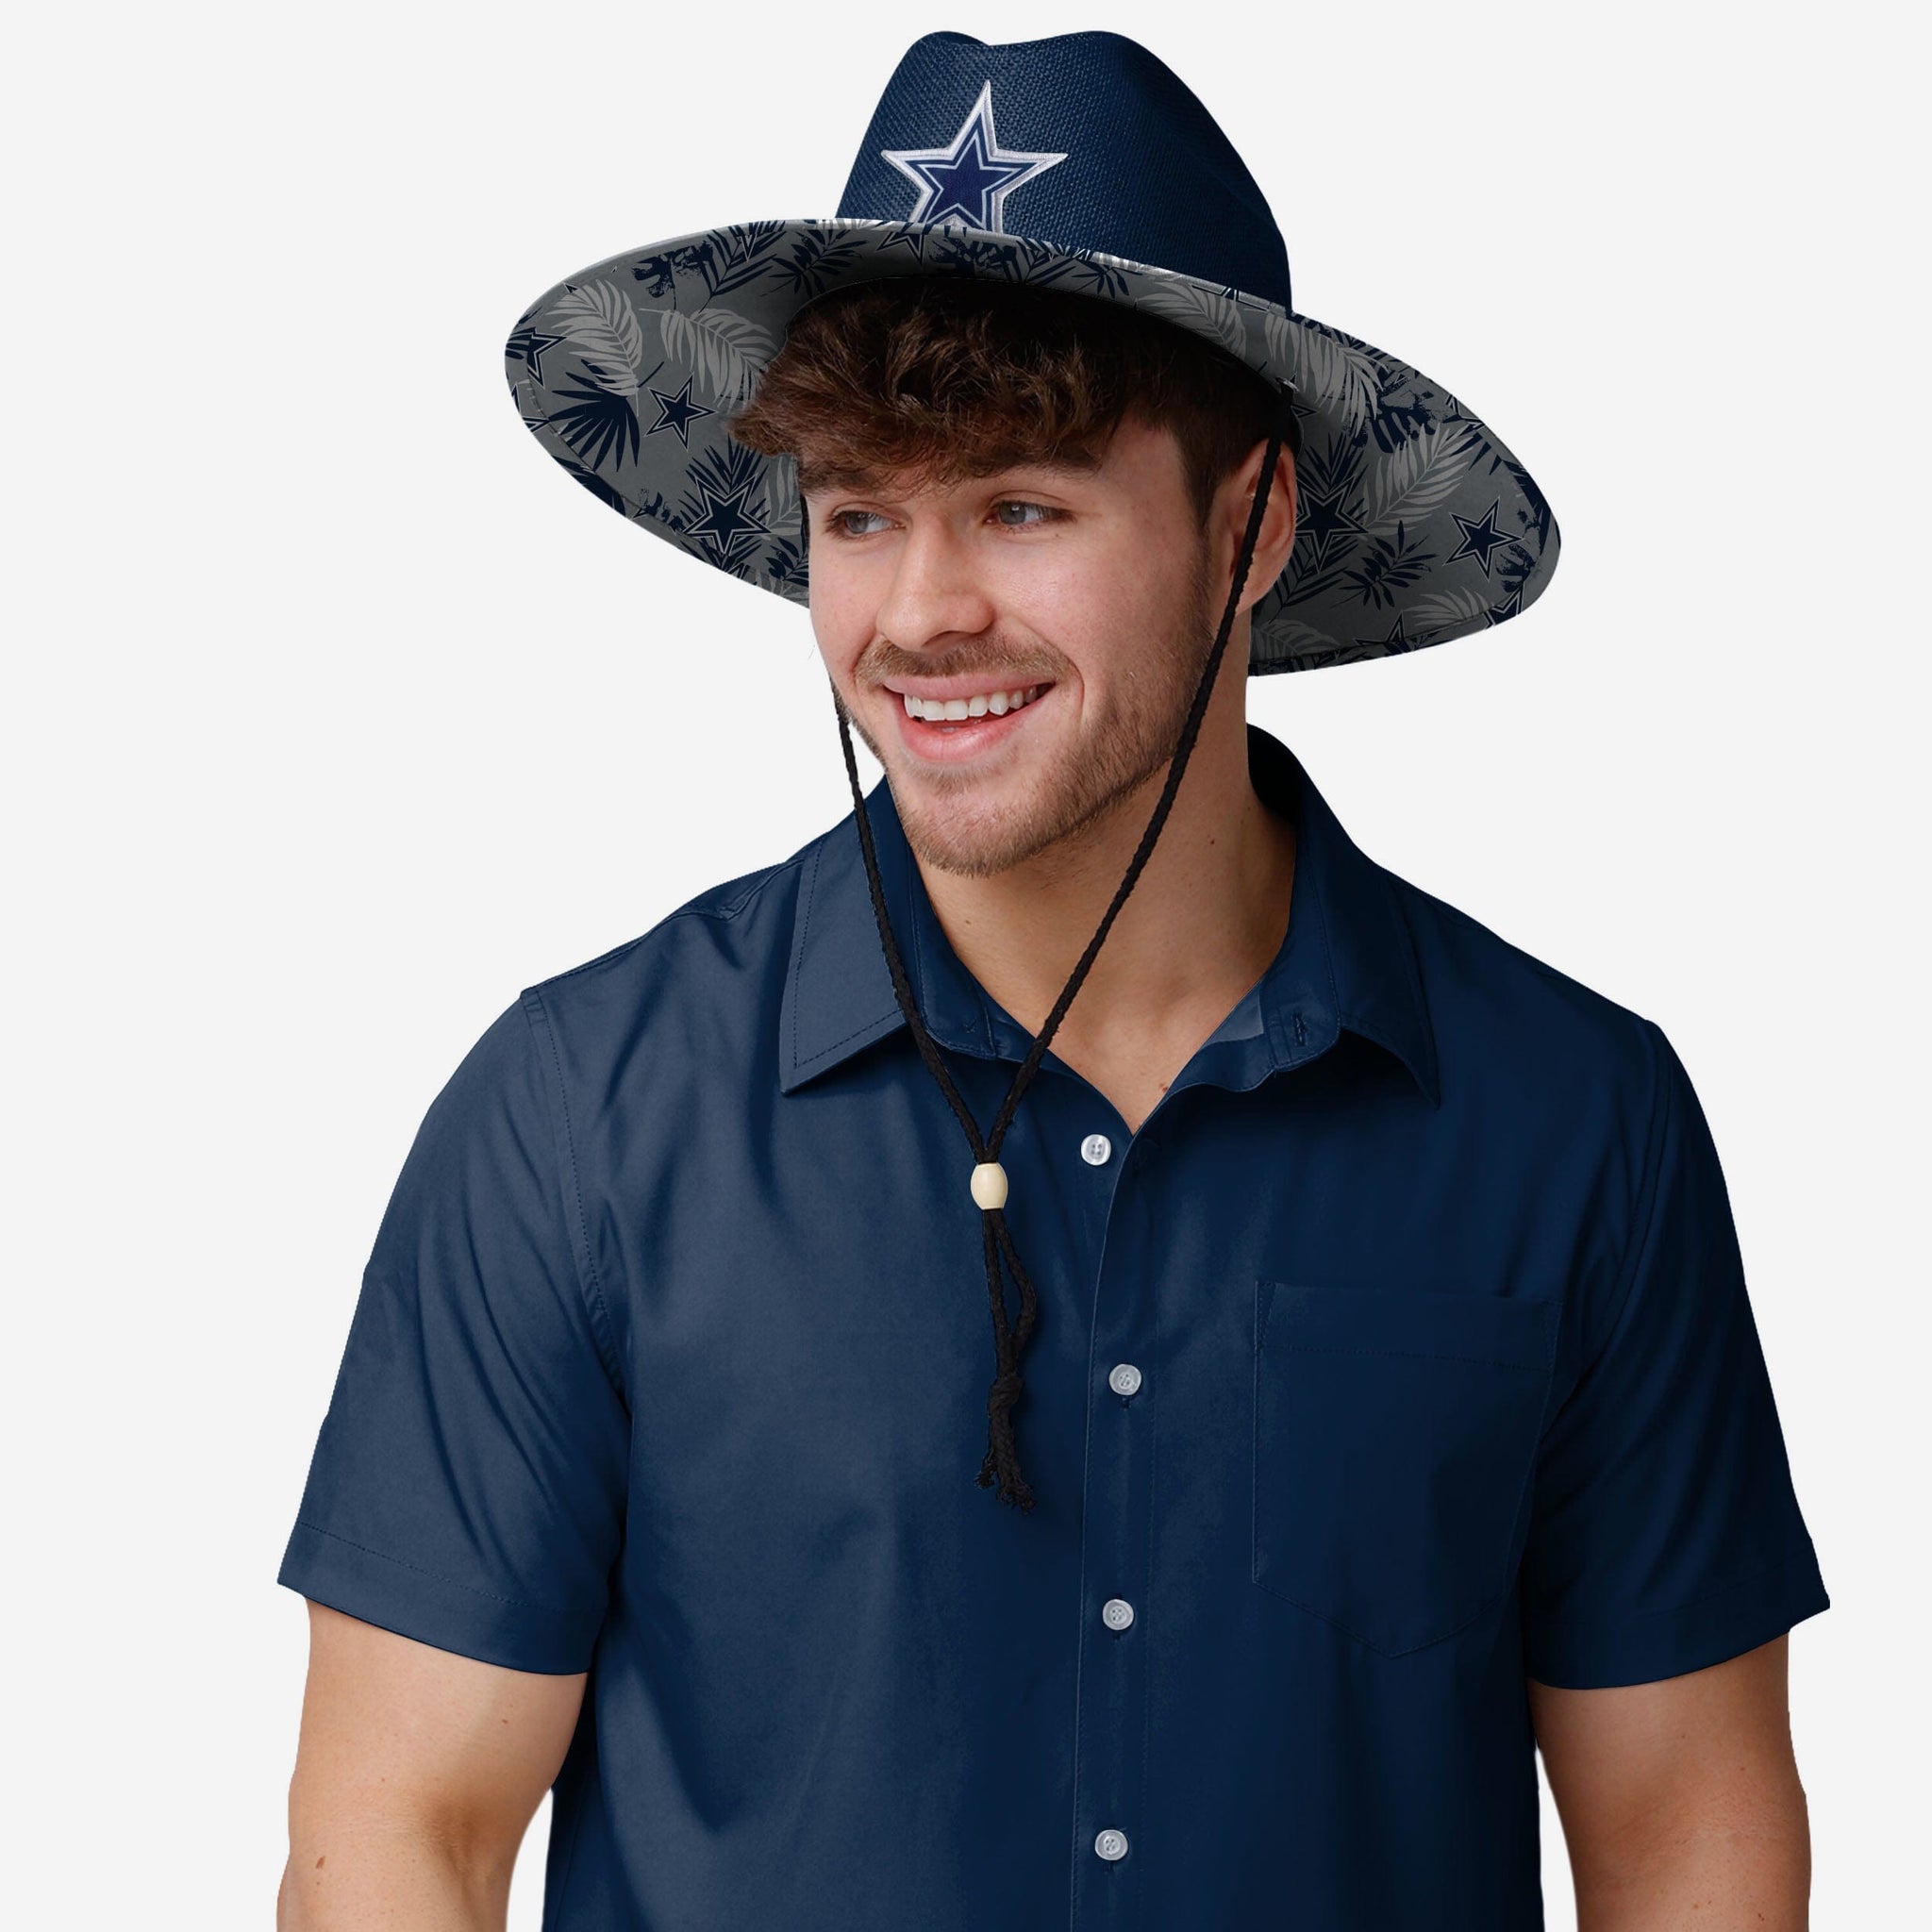 FOCO Dallas Cowboys NFL Team Color Straw Hat